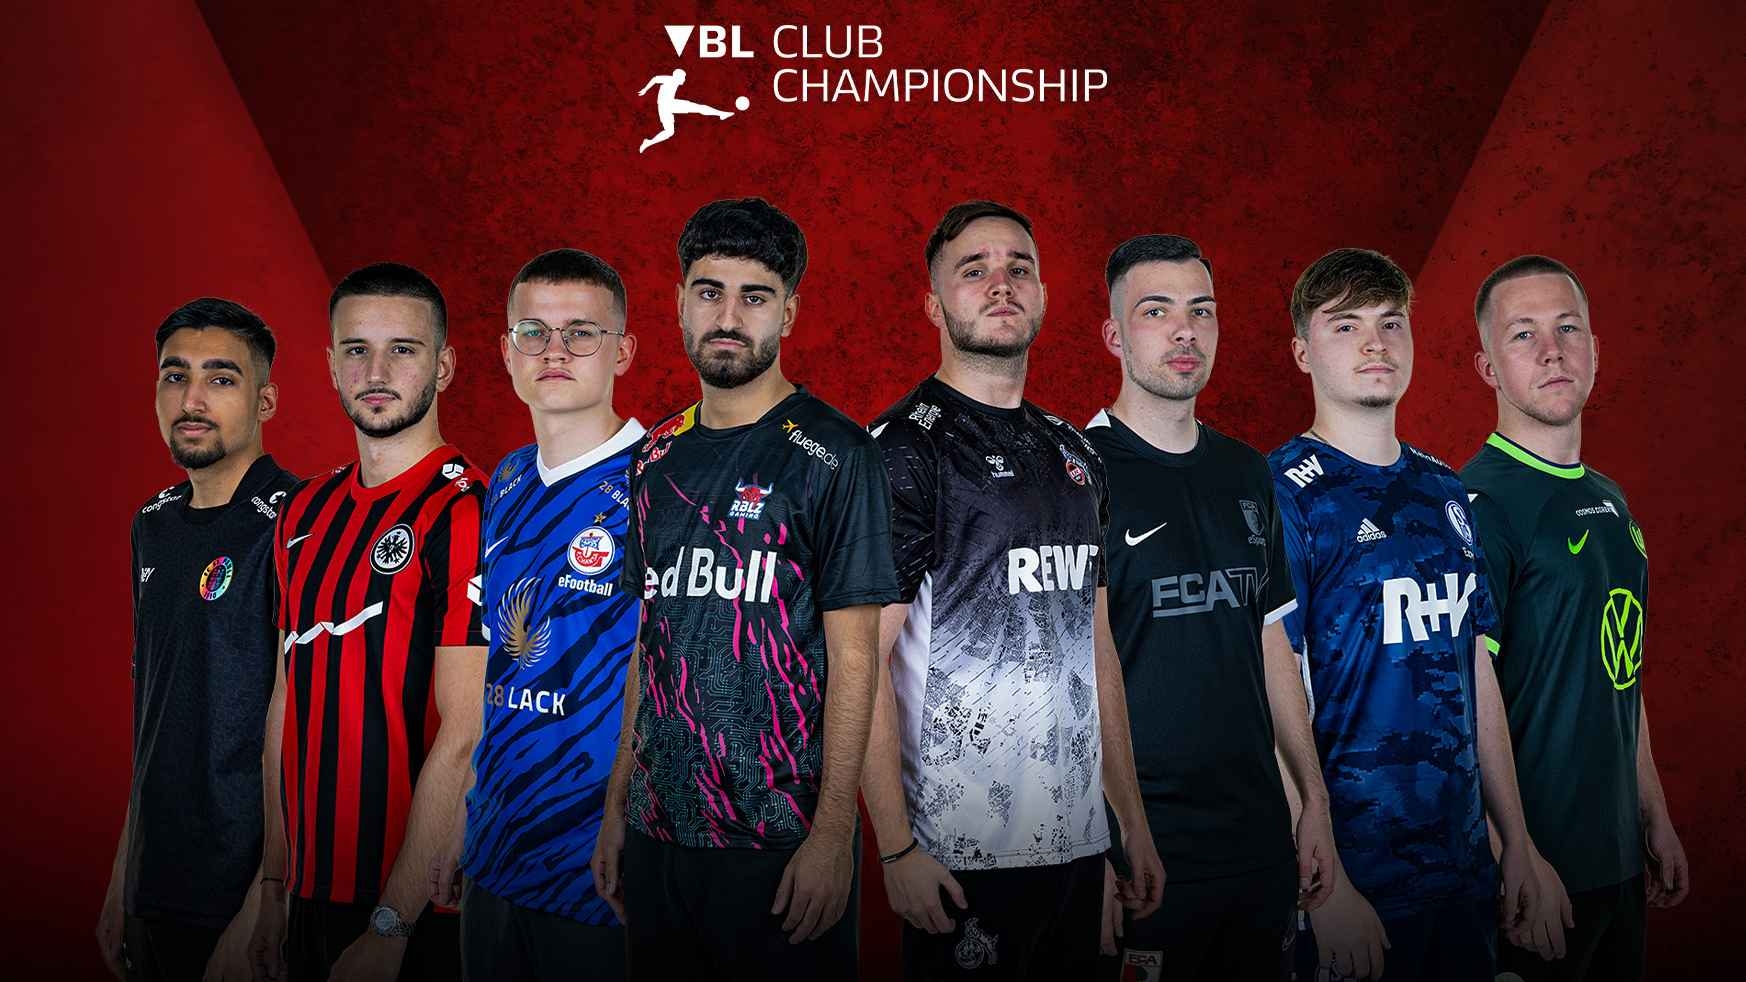 Finale der VBL Club Championship 2022/23 steht vor der Tür